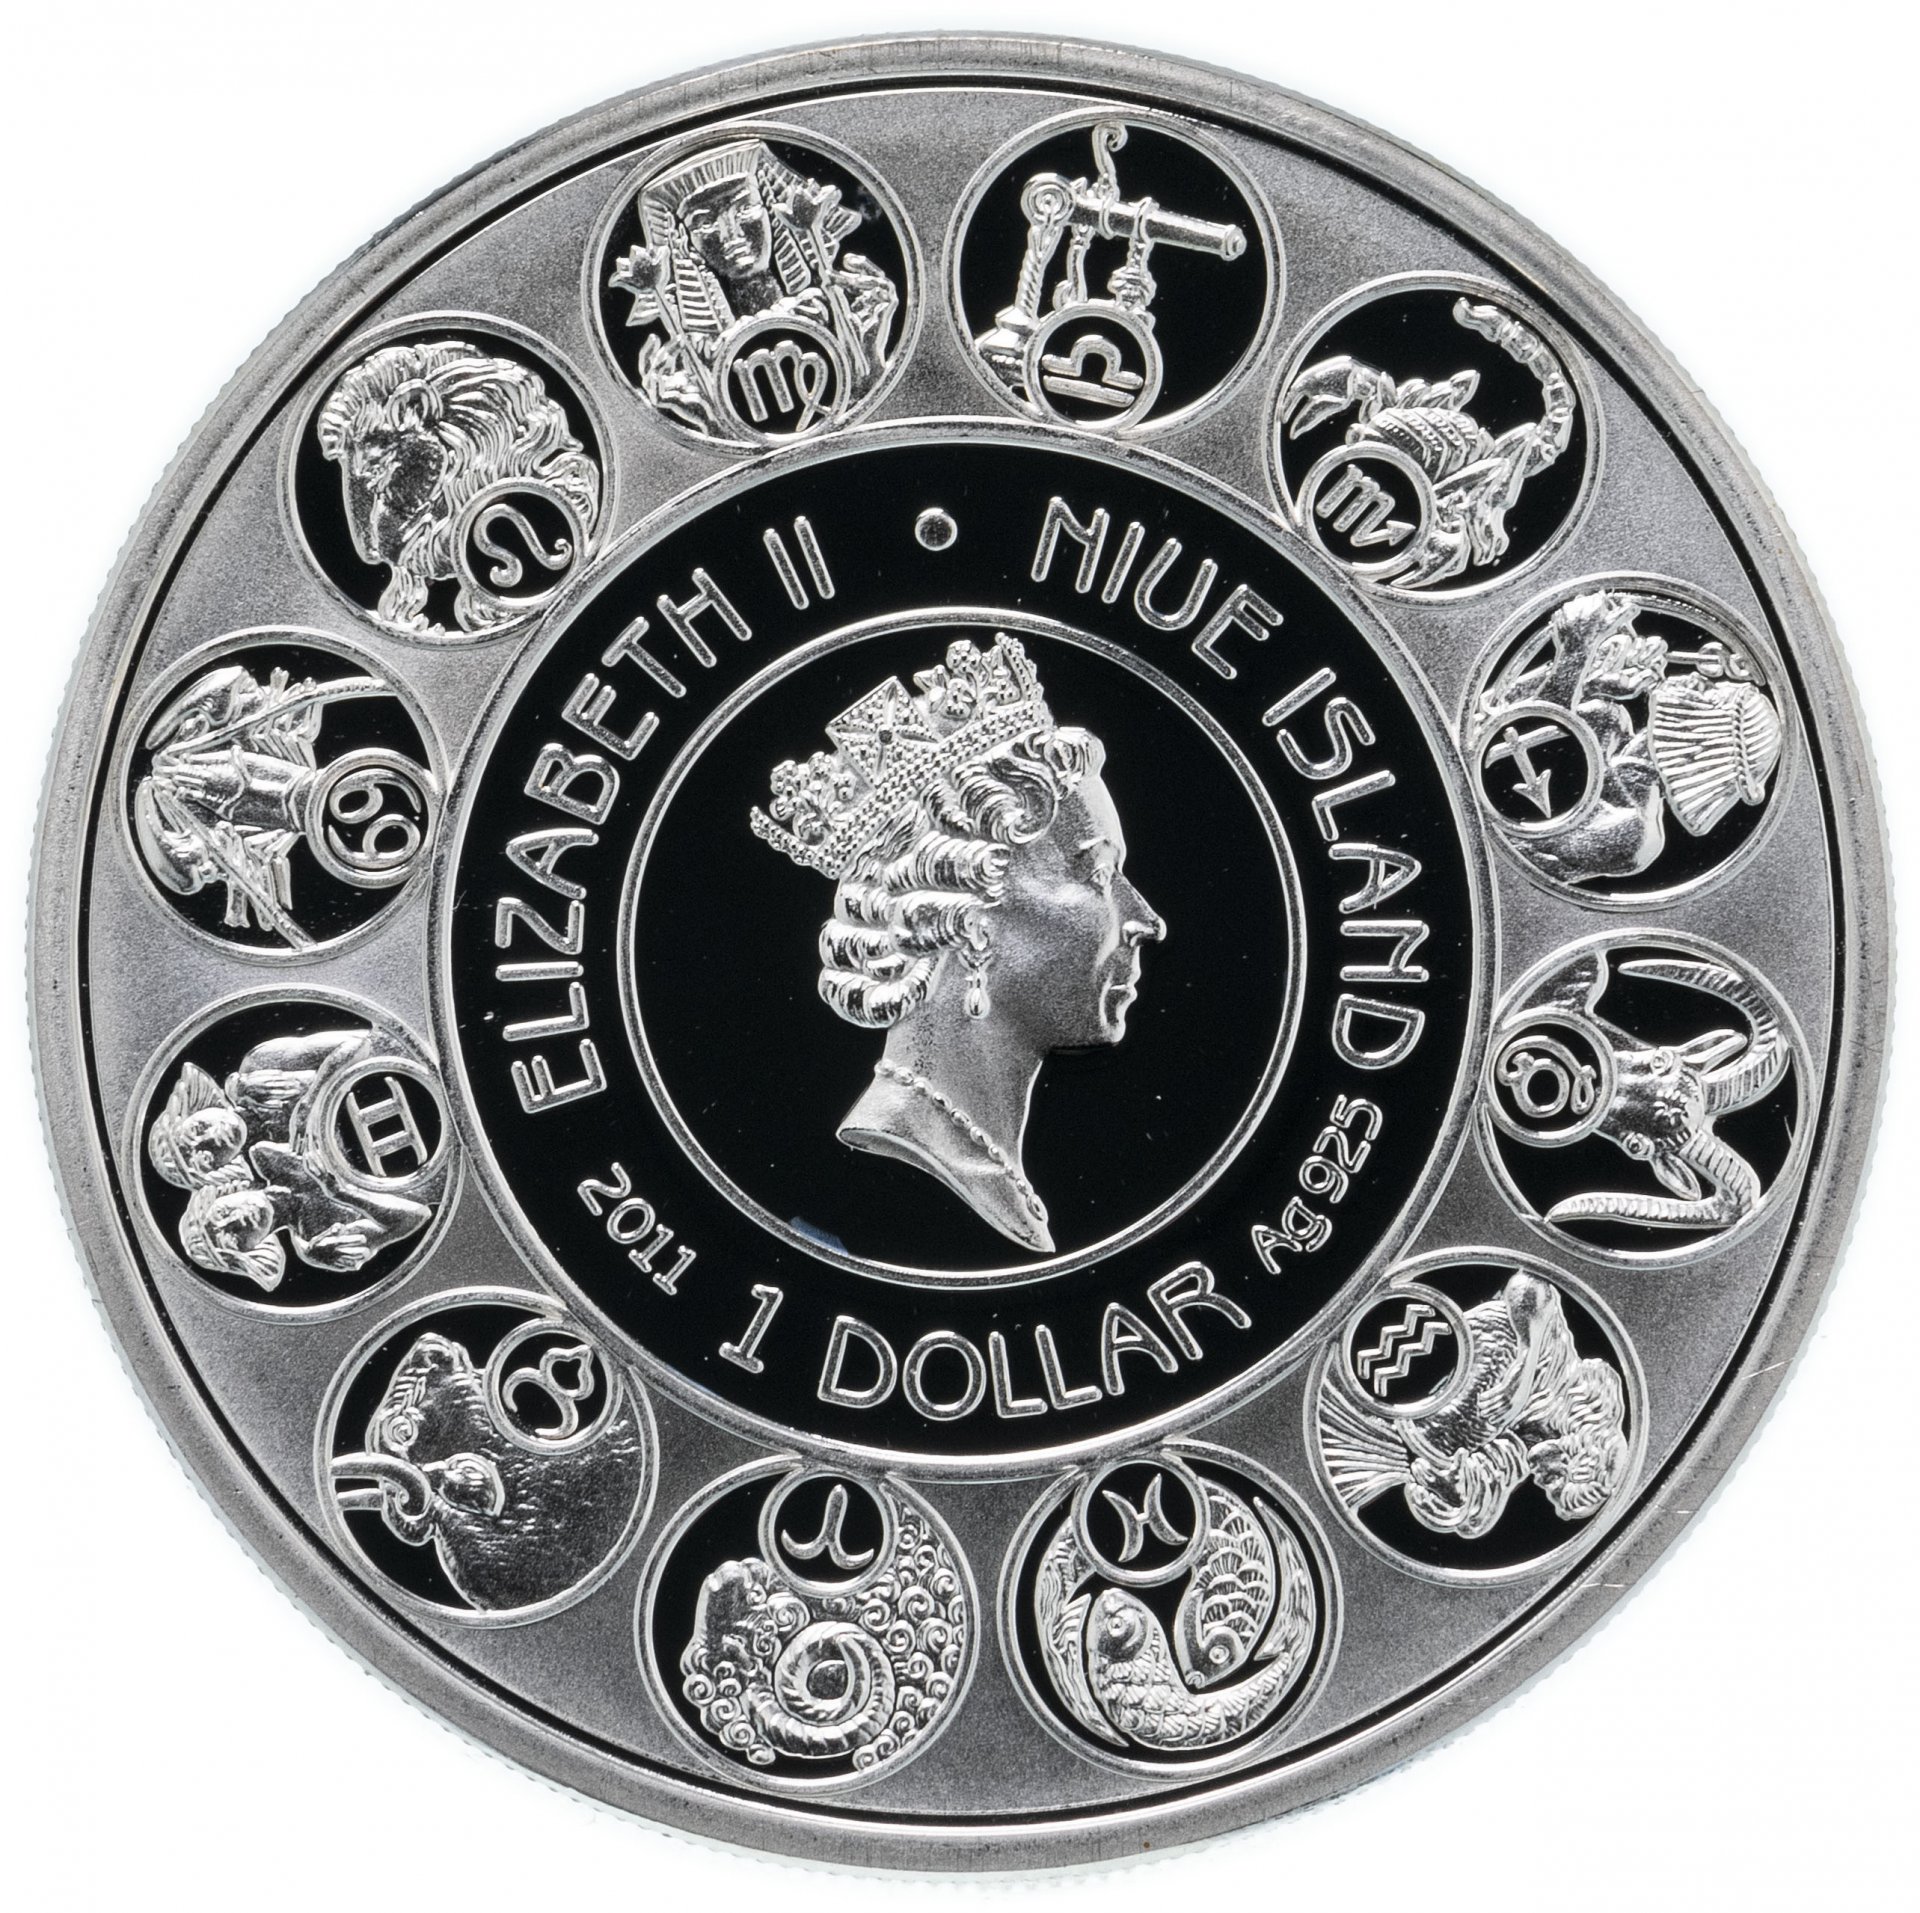 1 доллар монета серебро. Монеты Niue серебро. Монета серебро Niue 1 доллар Sagittarius. Монета 1 доллар Ниуэ 2011 серебро.